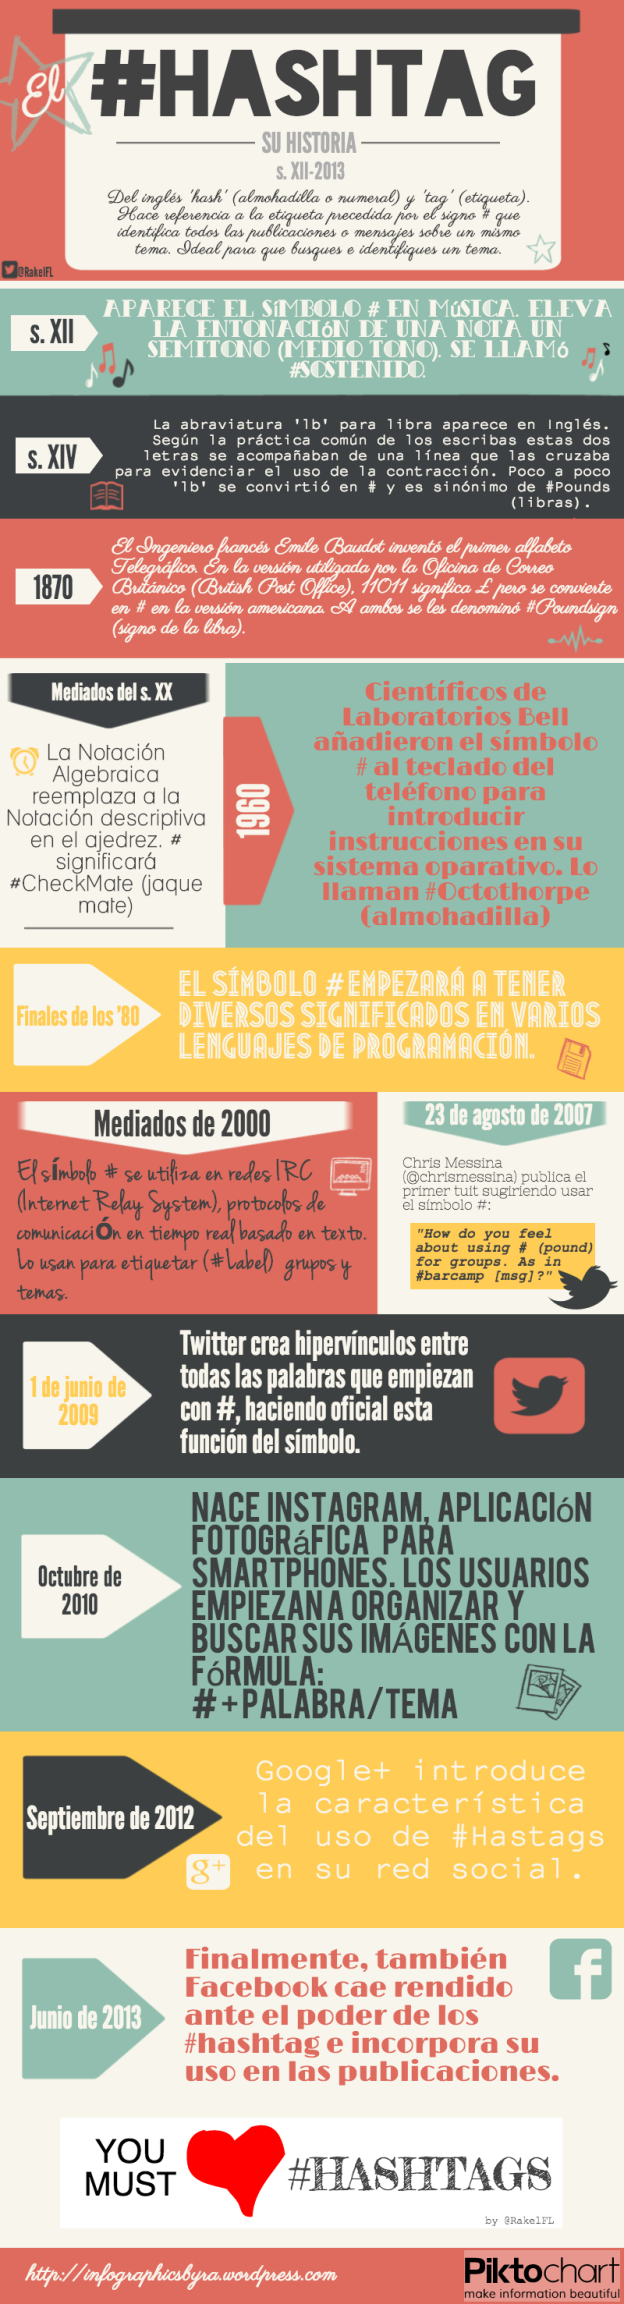 El #Hashtag y su Historia, by @RakelFL